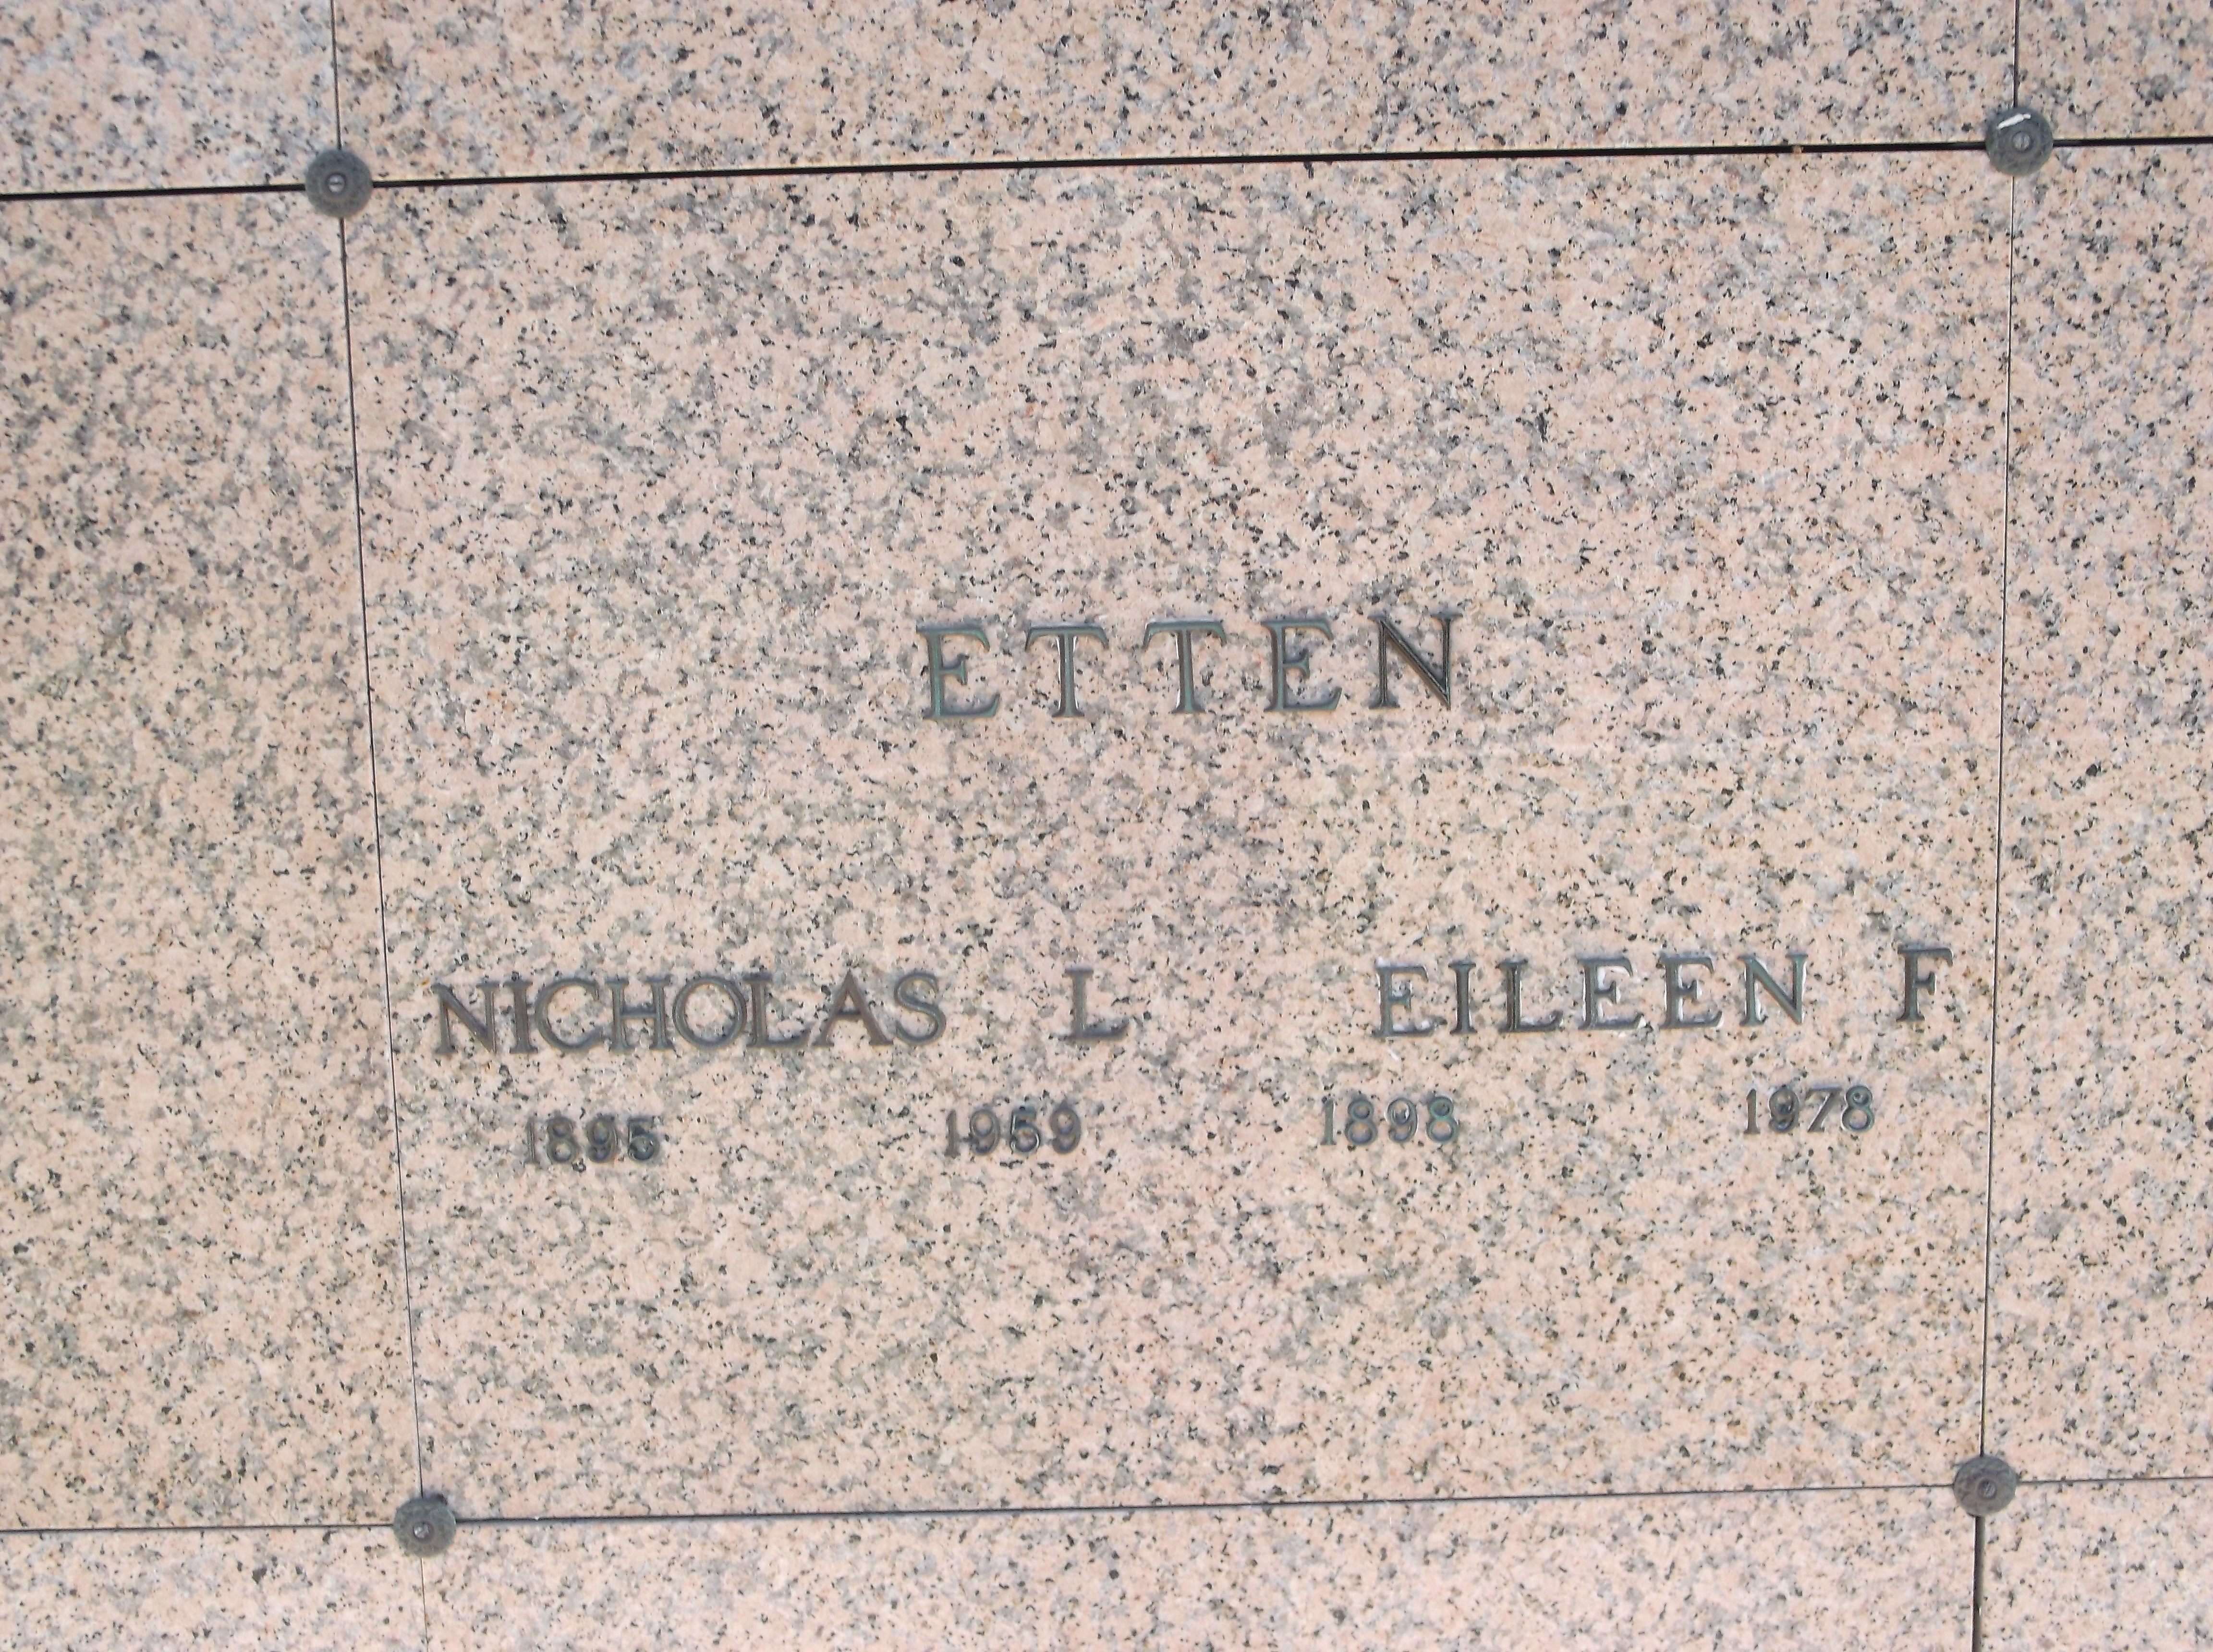 Eileen F Etten